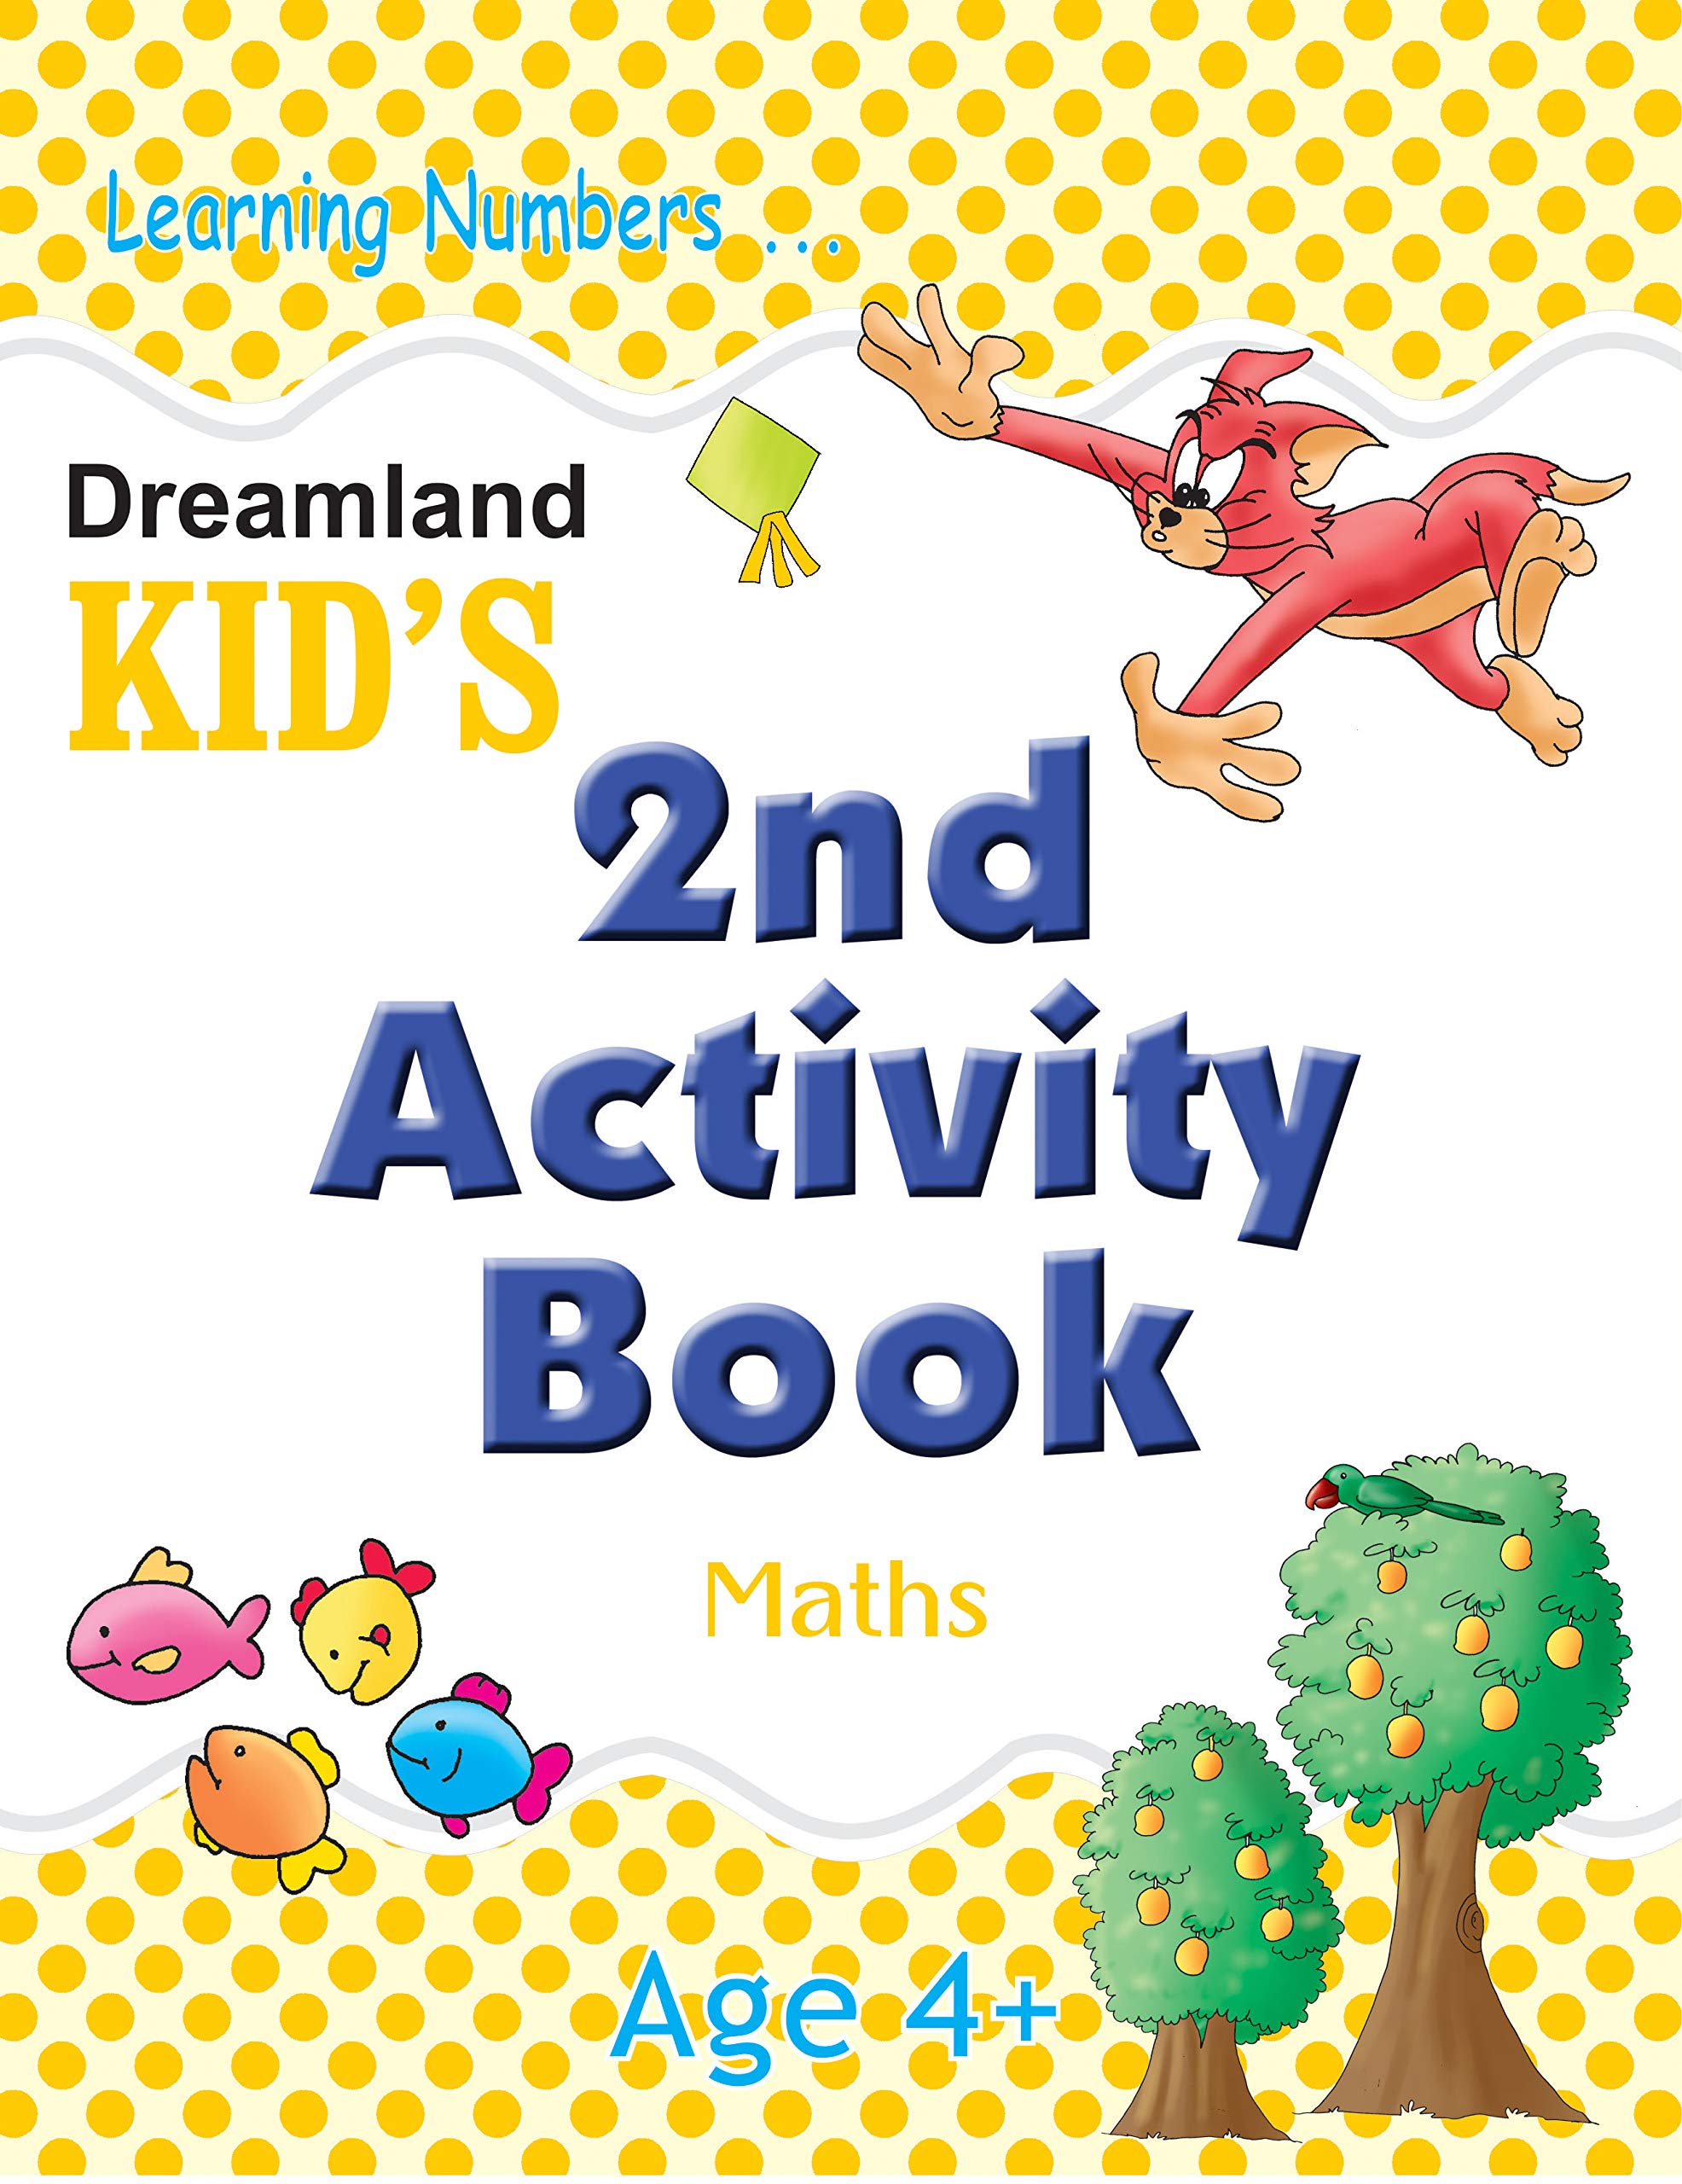 2nd Activity Book - Maths